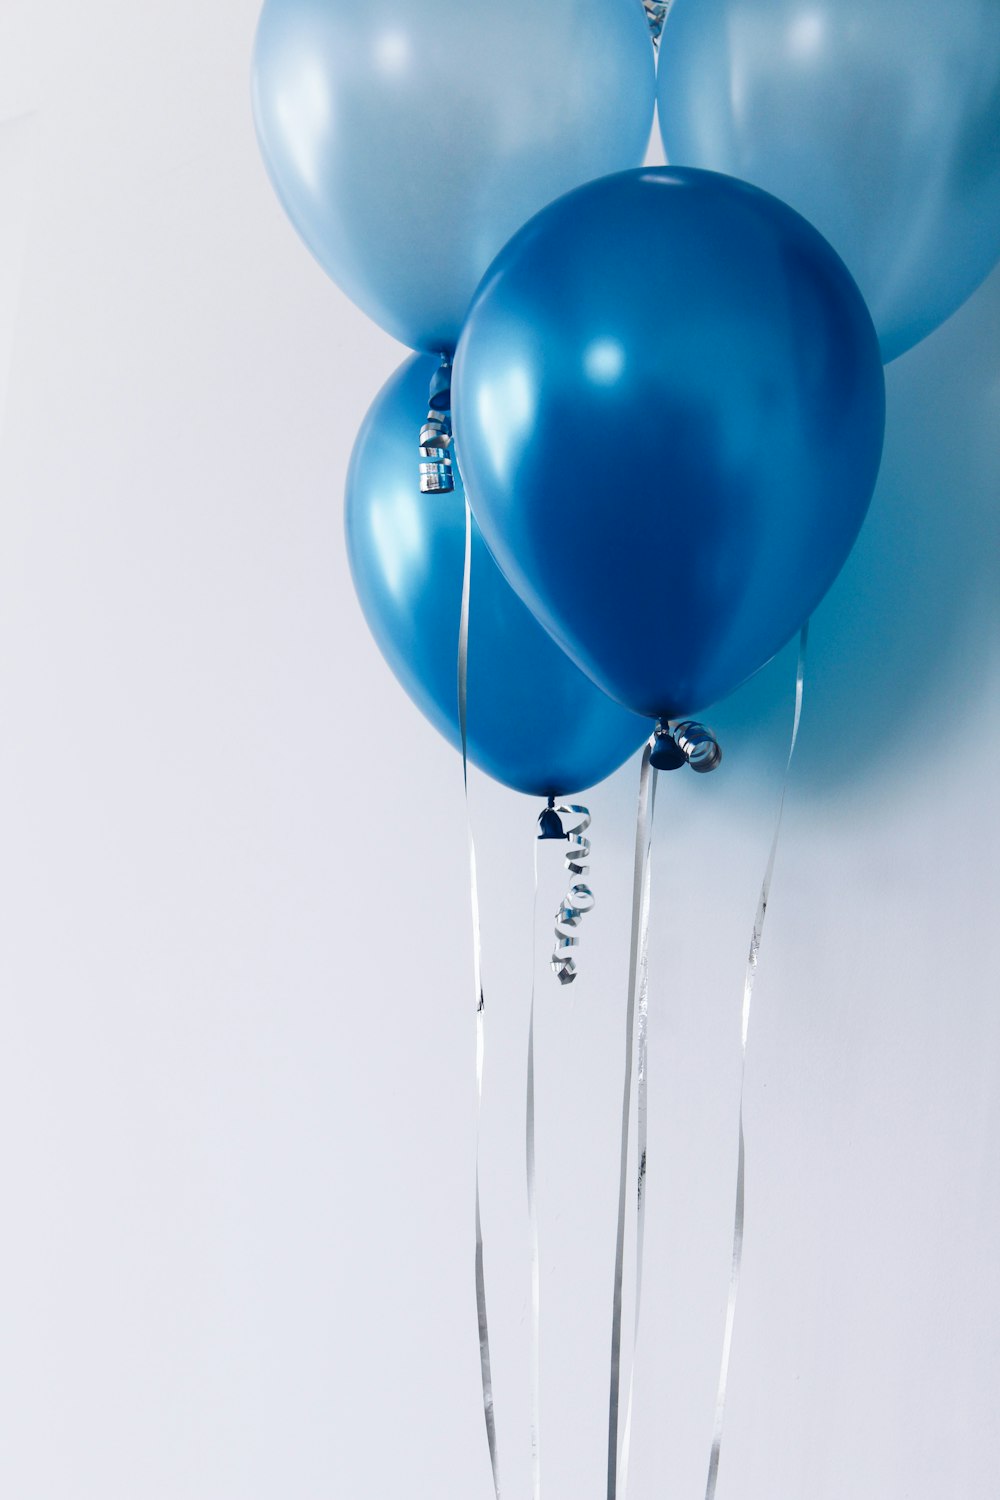 Quatro balões azuis perto da parede branca